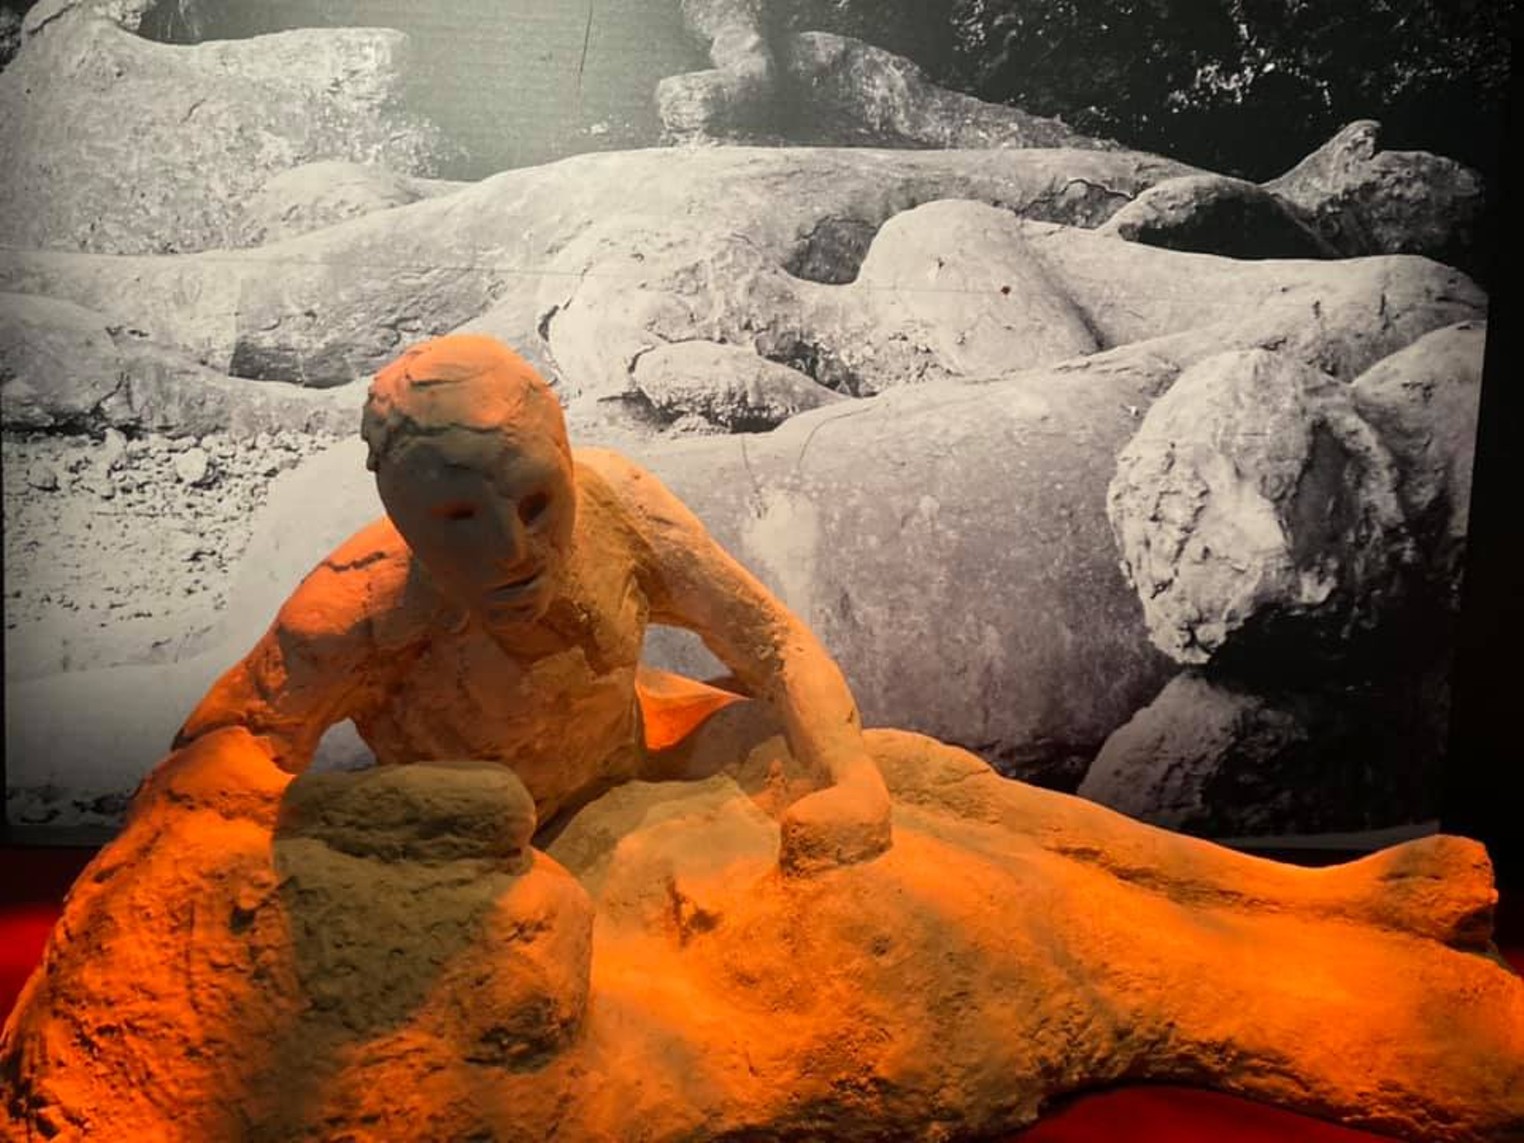 Pompeii Exhibit Opens at Houston Museum Houston Press